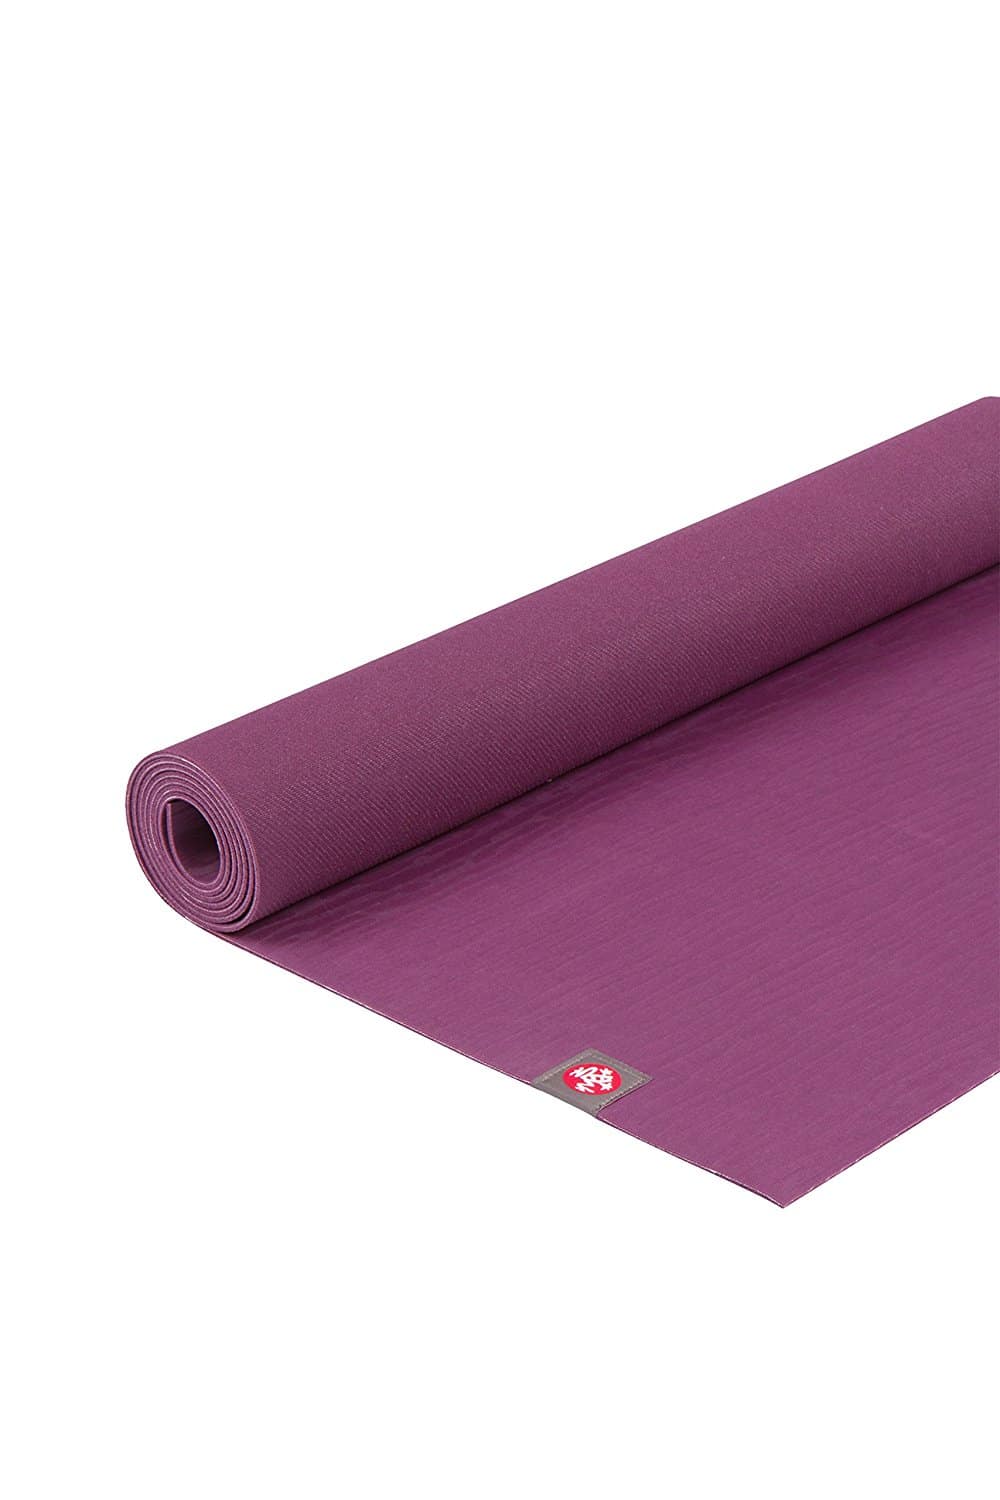 Manduka eKO Lite Yoga Matte - 3 mm - 180cm - Acai unter Marken - Manduka - Manduka Yoga Matten - Yoga - Pilates - Pilates Matte - Yoga - Yogamatten